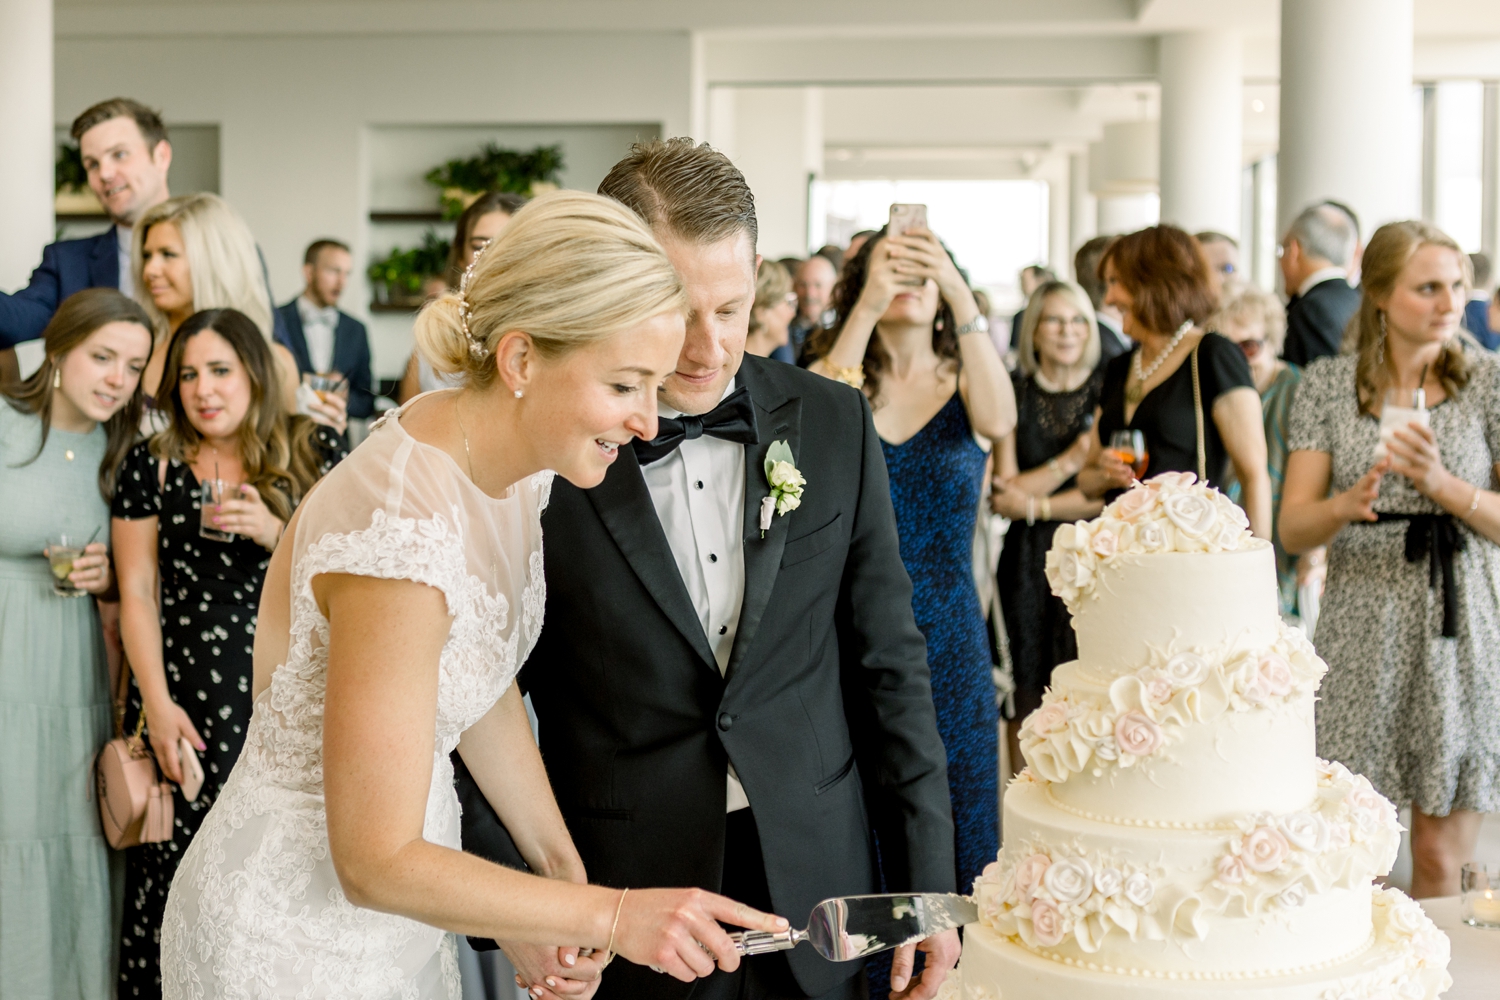 The BonBonerie Wedding Cake in Cincinnati